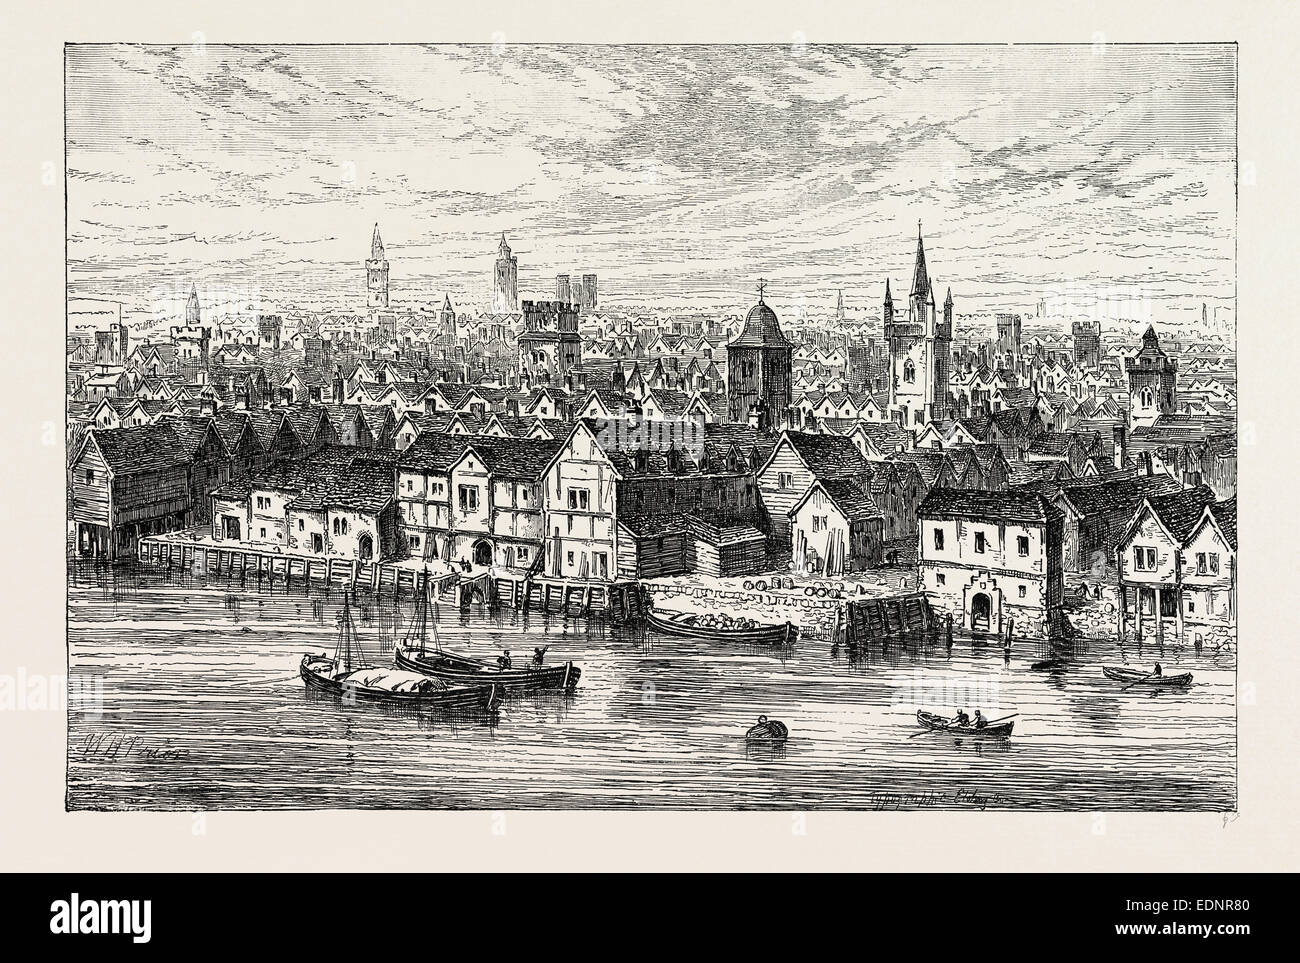 DER STAHL HOF UND NACHBARSCHAFT IM JAHRE 1540. London, UK, 19. Jahrhundert  Gravur Stockfotografie - Alamy